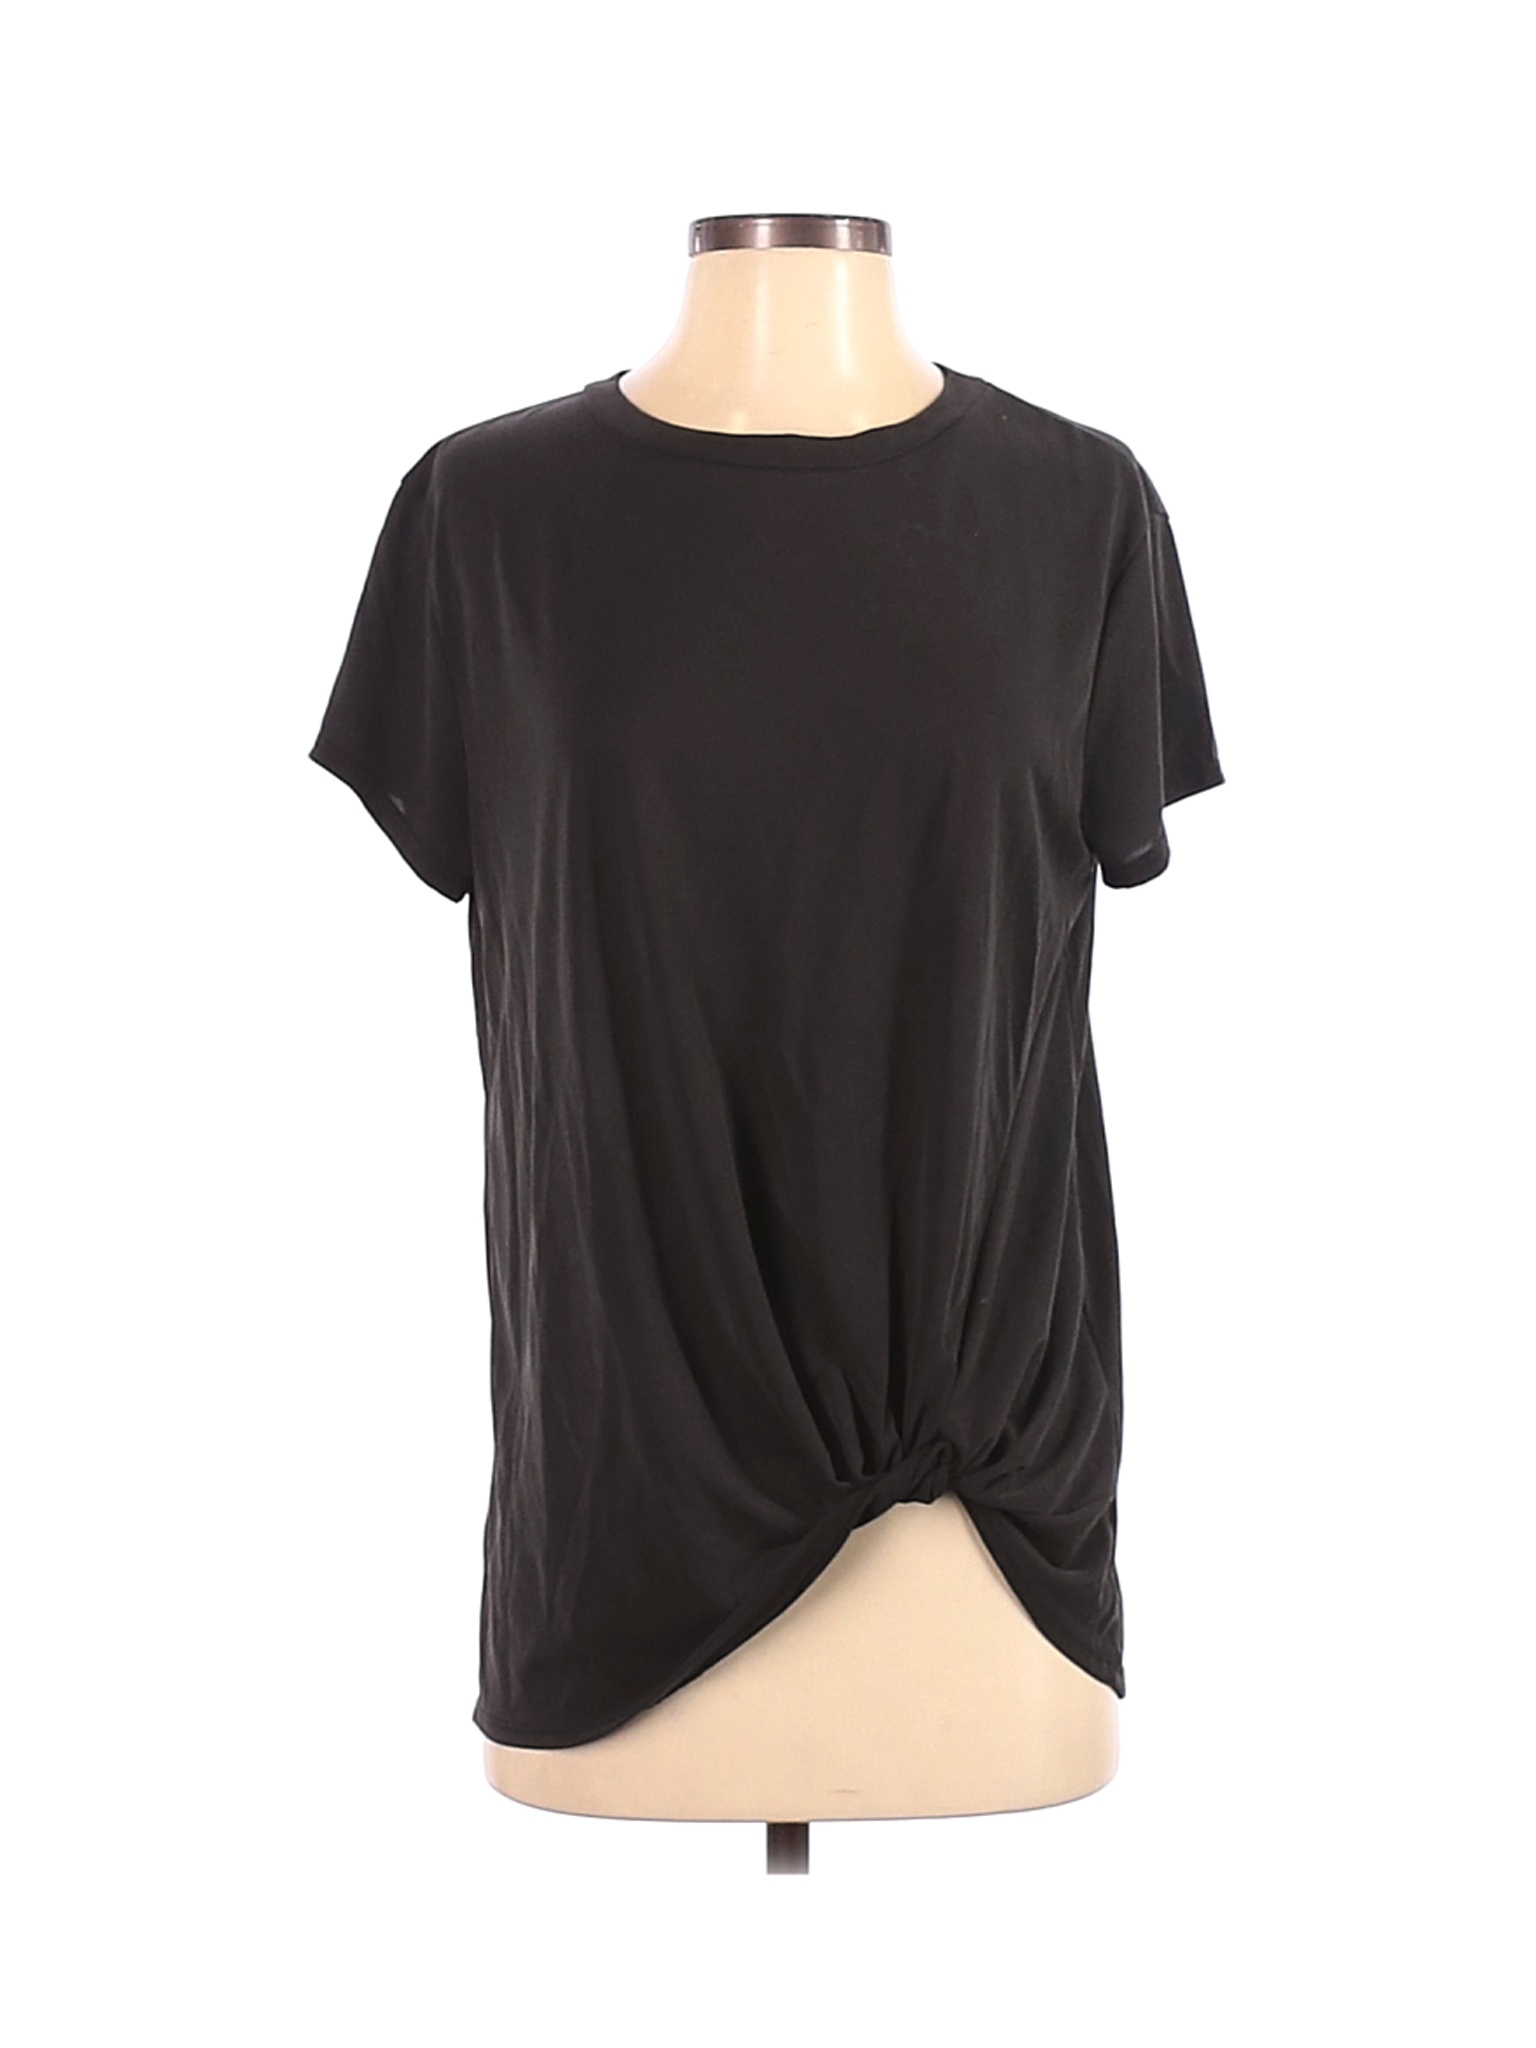 Green Envelope Women Black Short Sleeve T-Shirt S | eBay